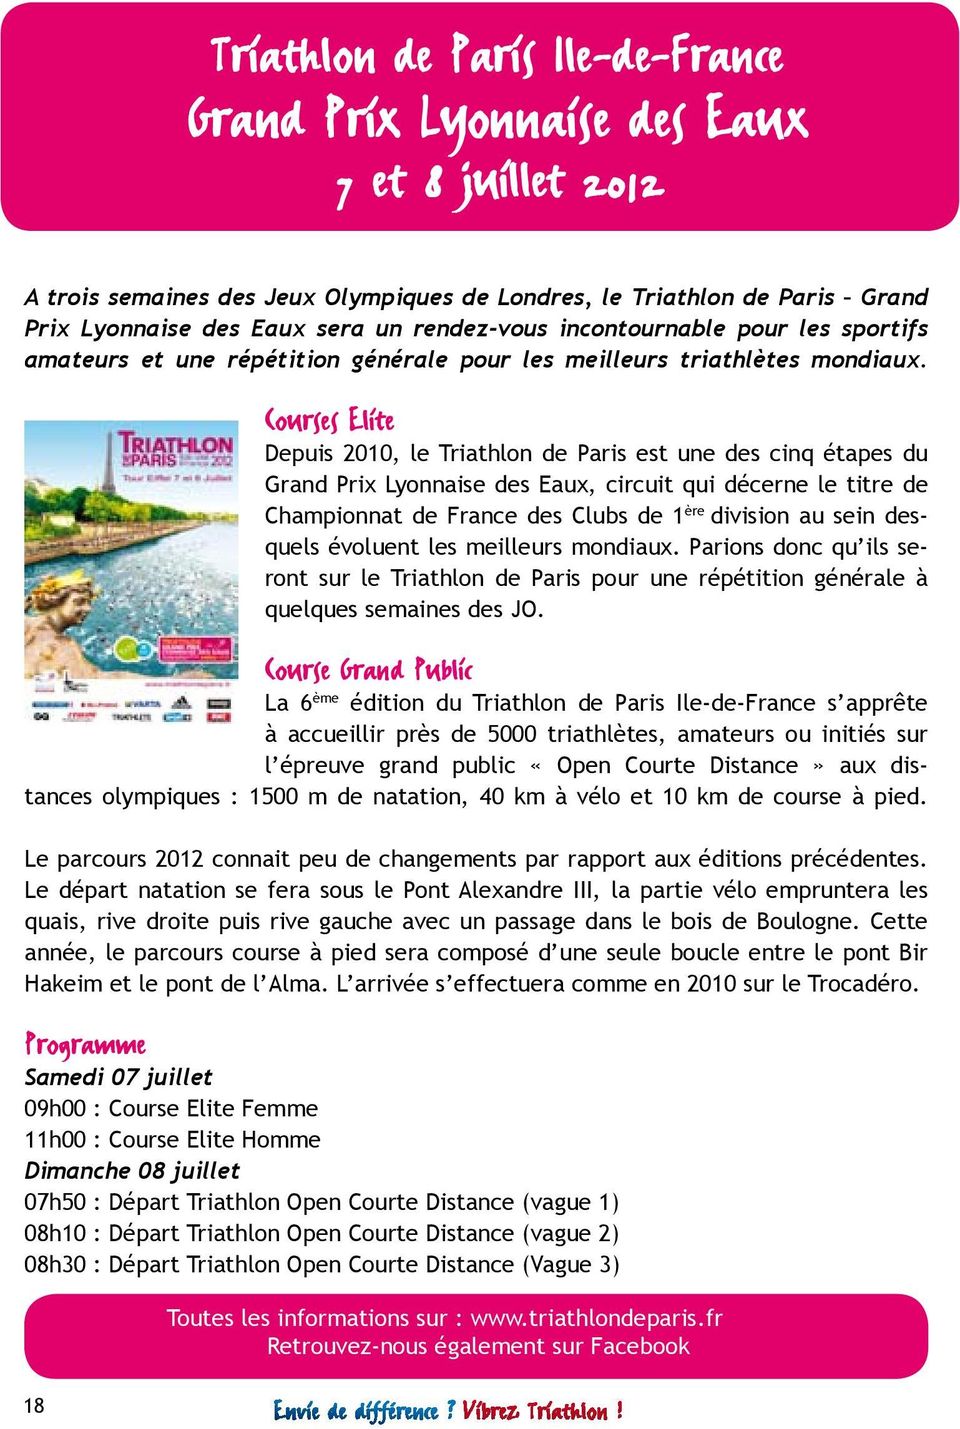 Courses Elite Depuis 2010, le Triathlon de Paris est une des cinq étapes du Grand Prix Lyonnaise des Eaux, circuit qui décerne le titre de Championnat de France des Clubs de 1 ère division au sein